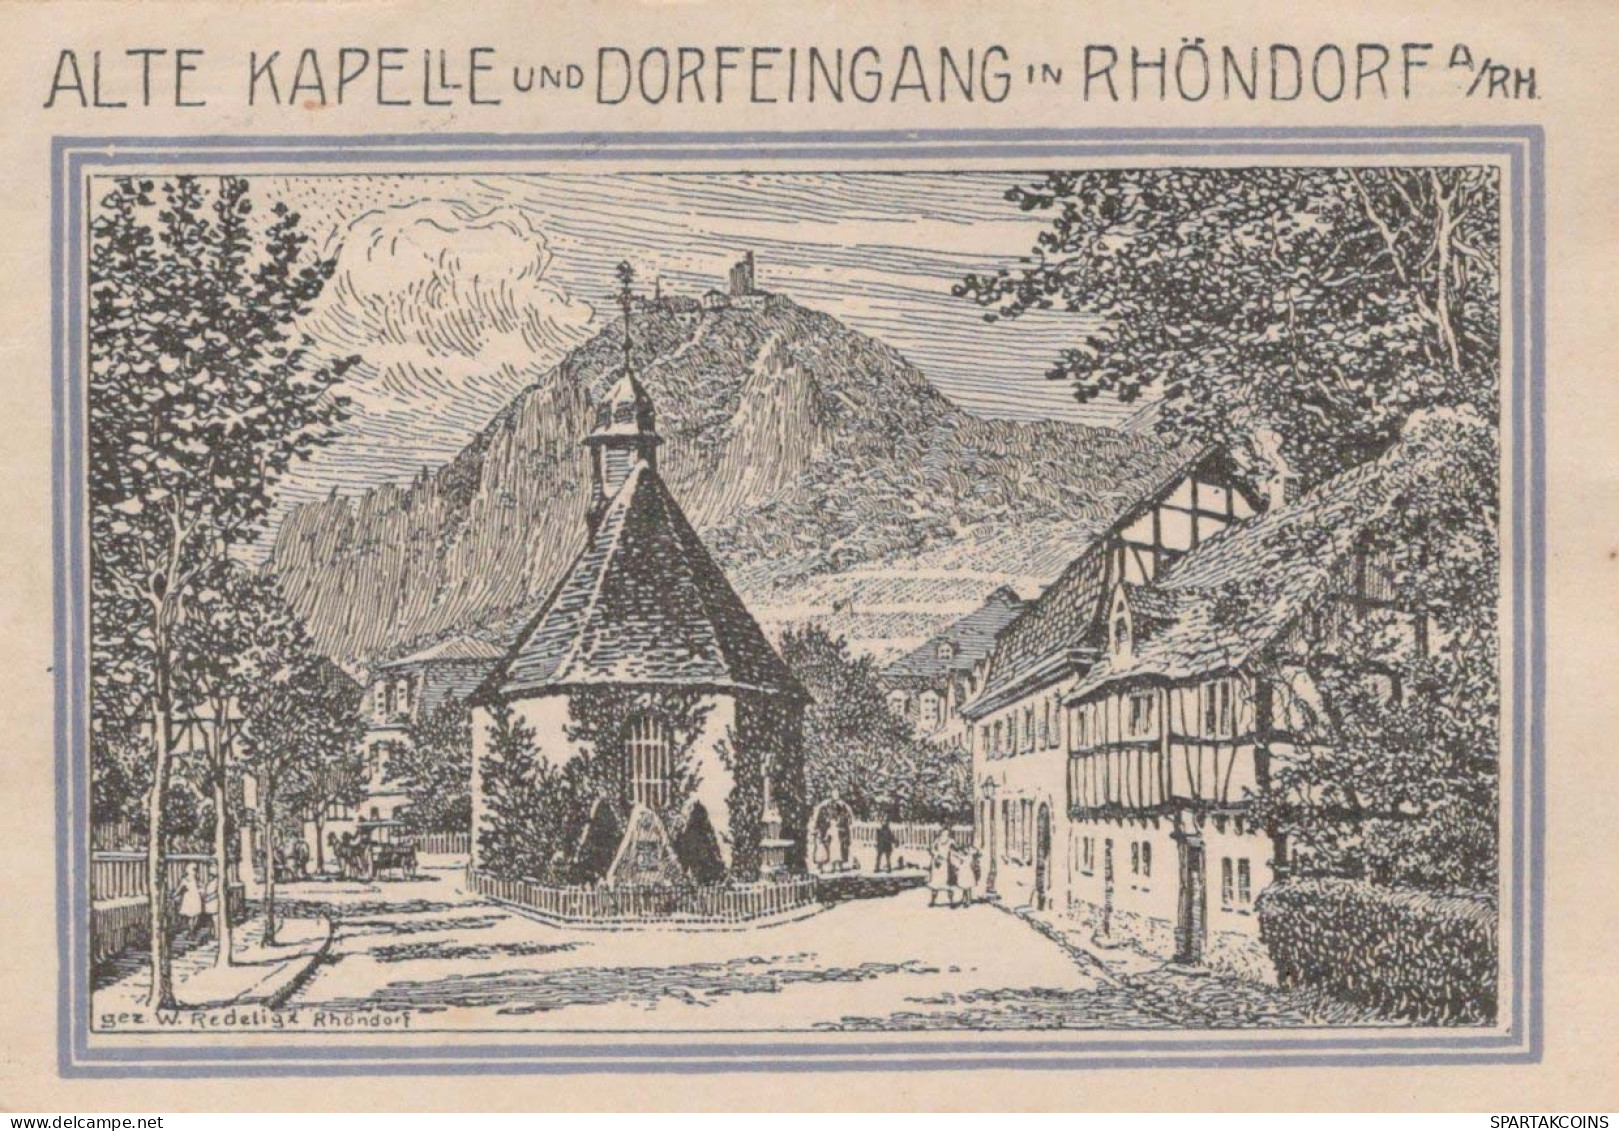 99 PFENNIG 1921 Stadt BAD HONNEF Rhine DEUTSCHLAND Notgeld Banknote #PF999 - [11] Lokale Uitgaven